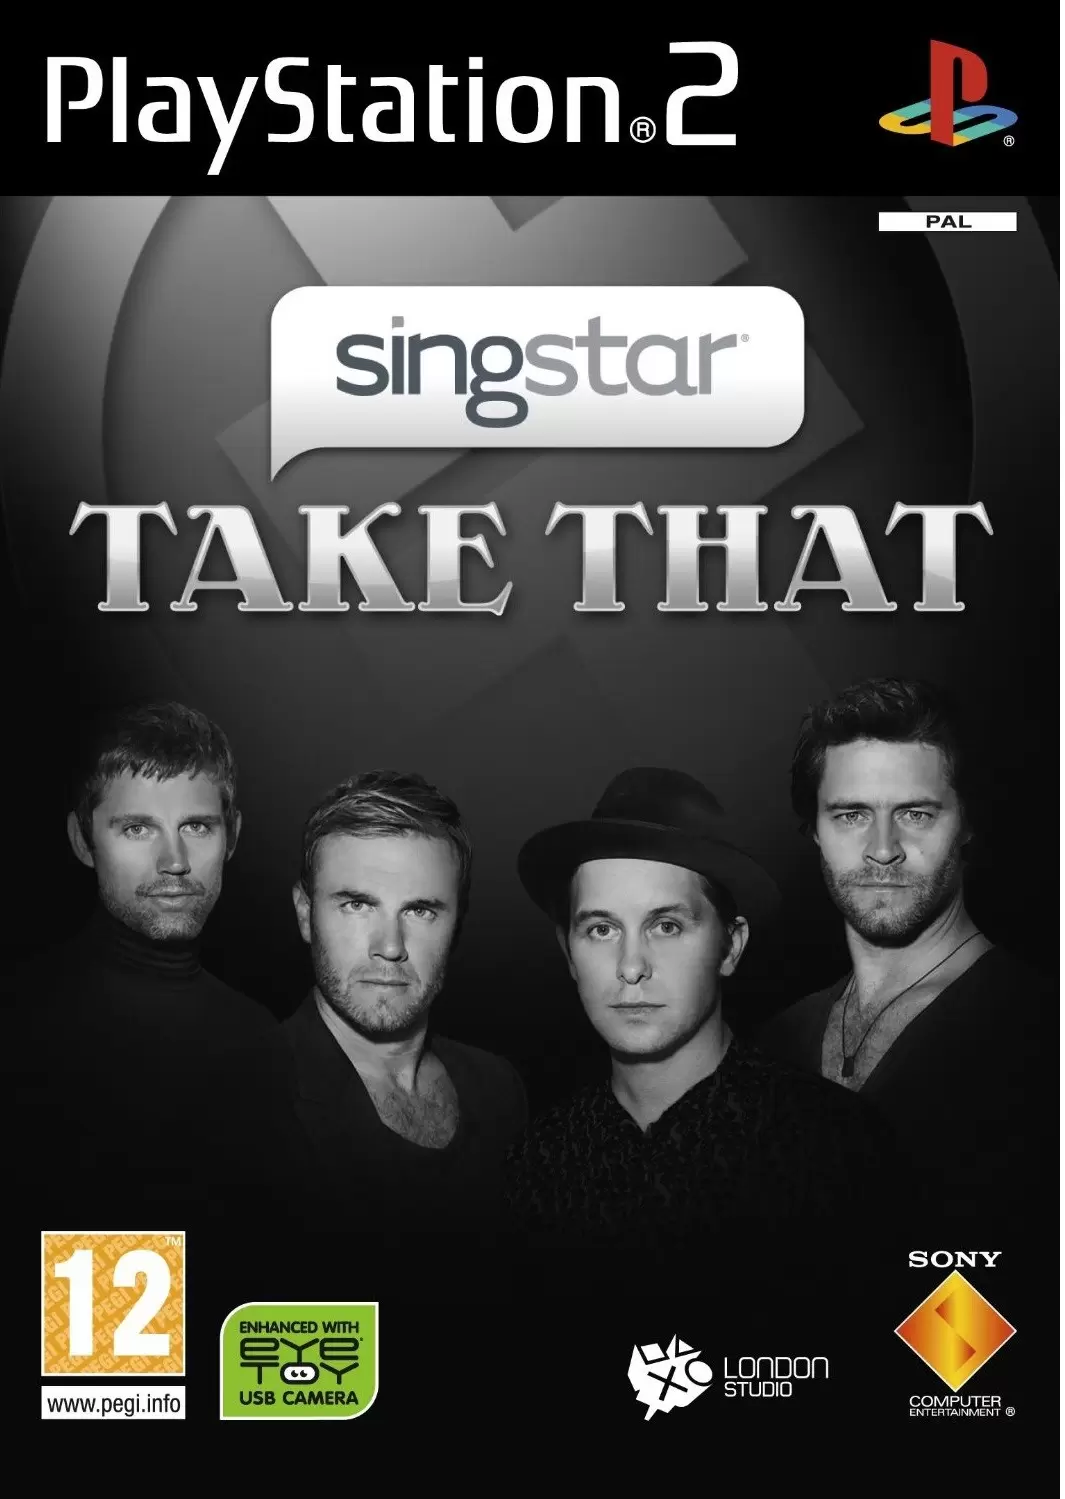 PS2 Games - SingStar Take That